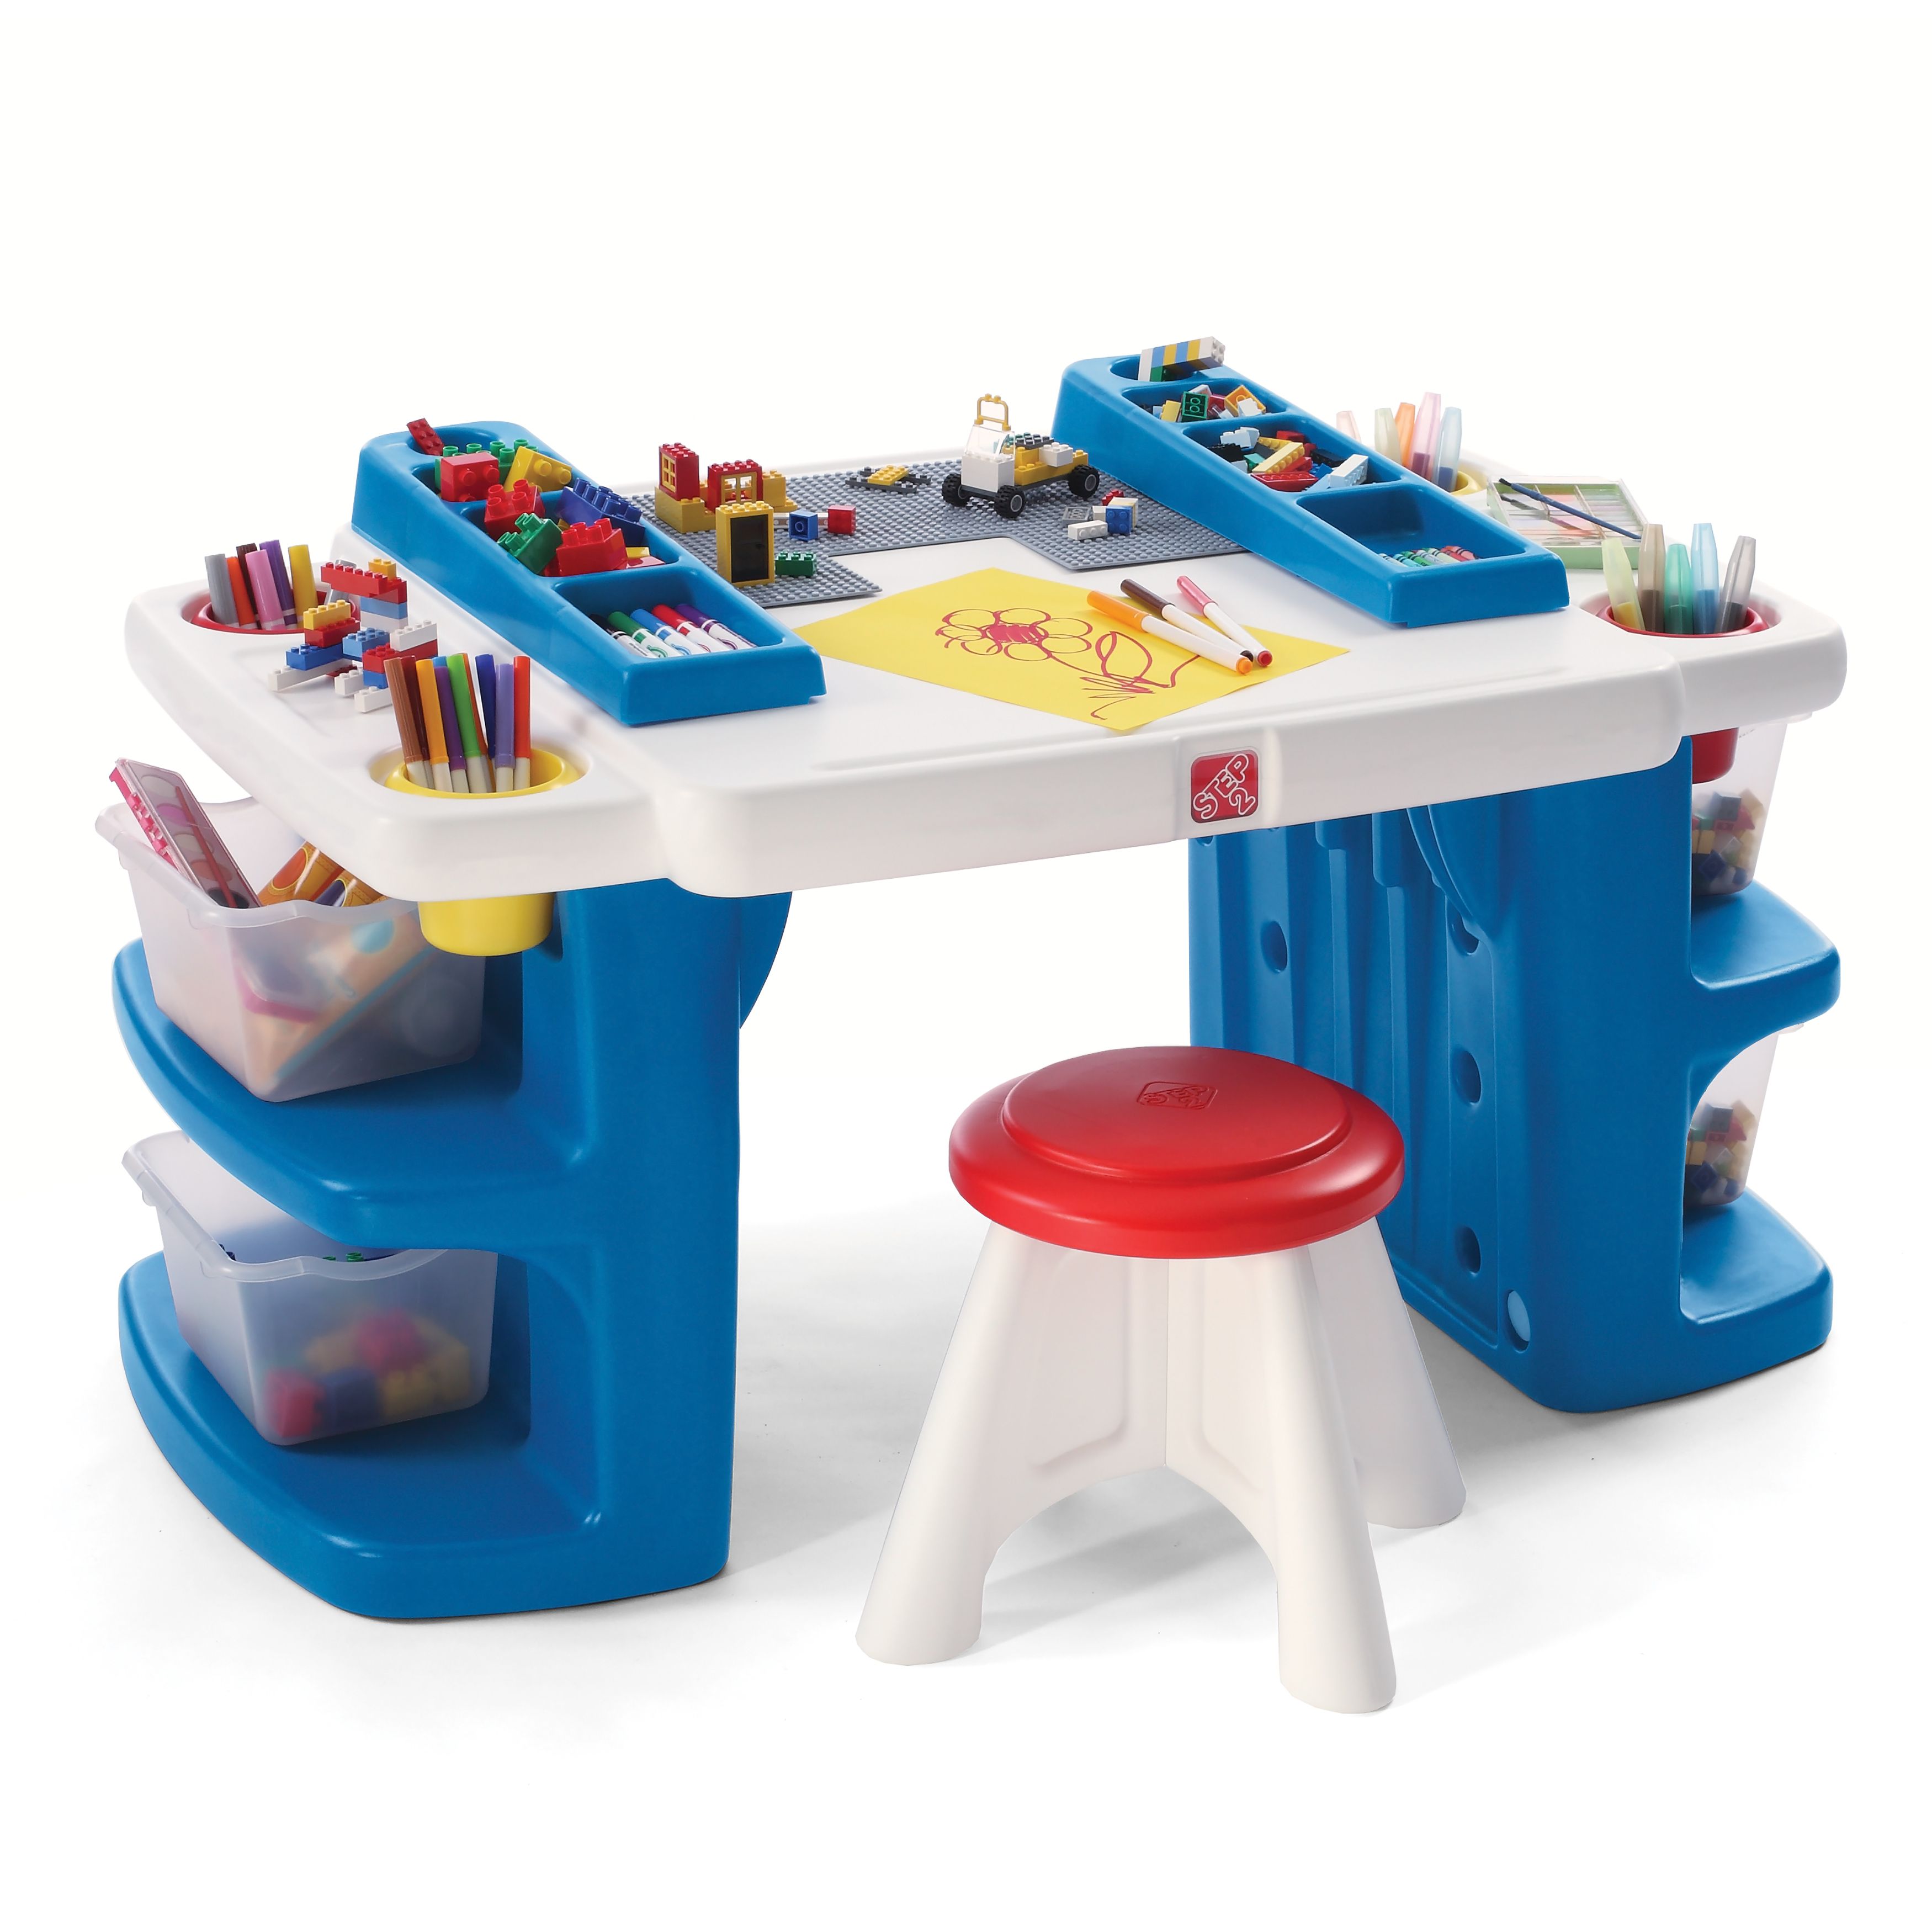 Играть со столом. Step2 стол детский. Стол степ 2. Детский игровой столик. Многофункциональный стол для детей.